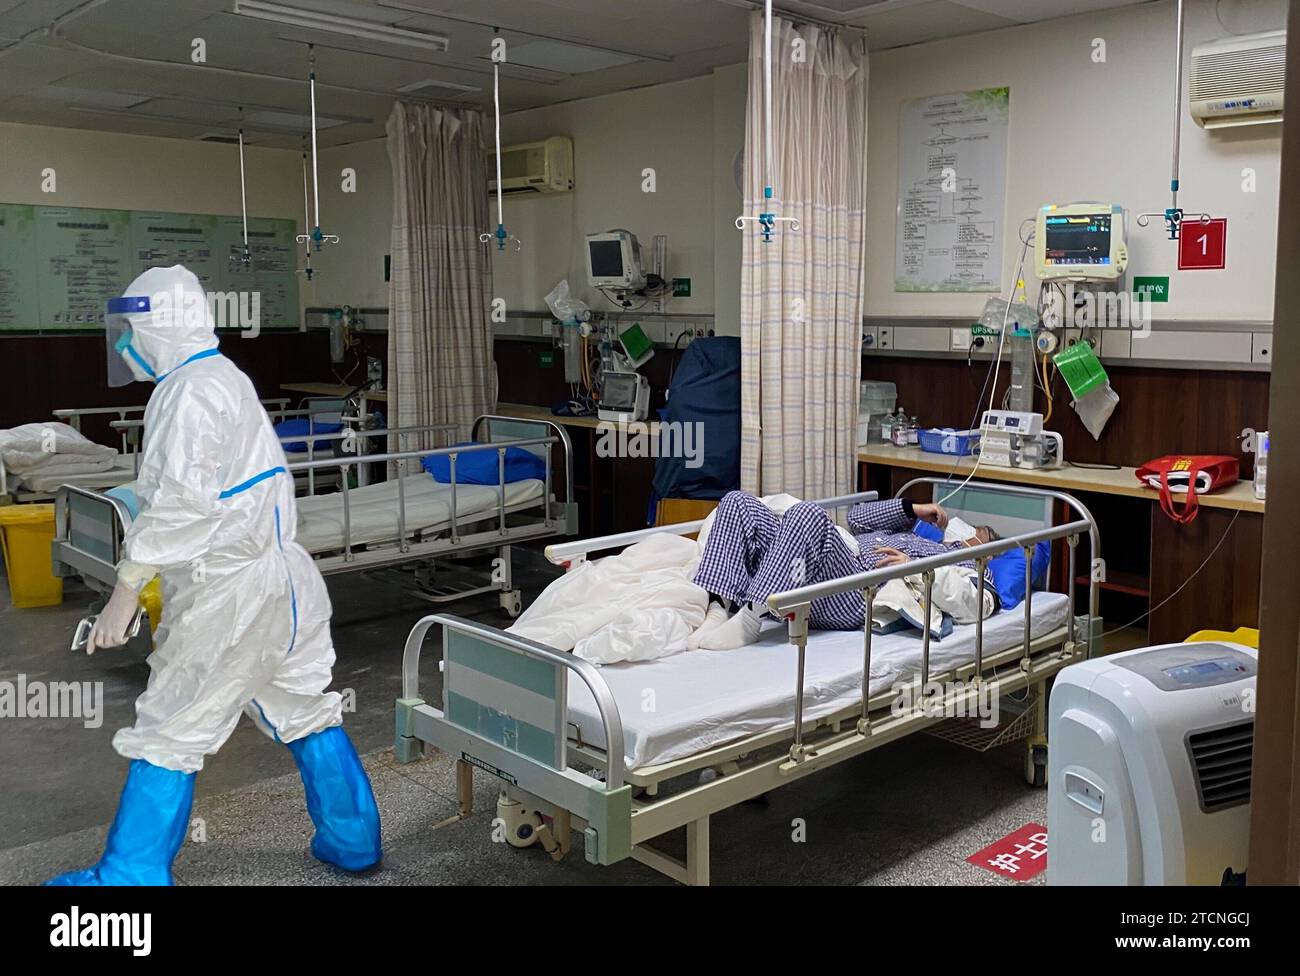 Wuhan (China), 16.04.2020. Ein Gesundheitspersonal kümmert sich um einen Patienten im Krankenhaus 7. Foto: Pablo M. Díez. Quelle: Album / Archivo ABC / Pablo M. Díez Stockfoto